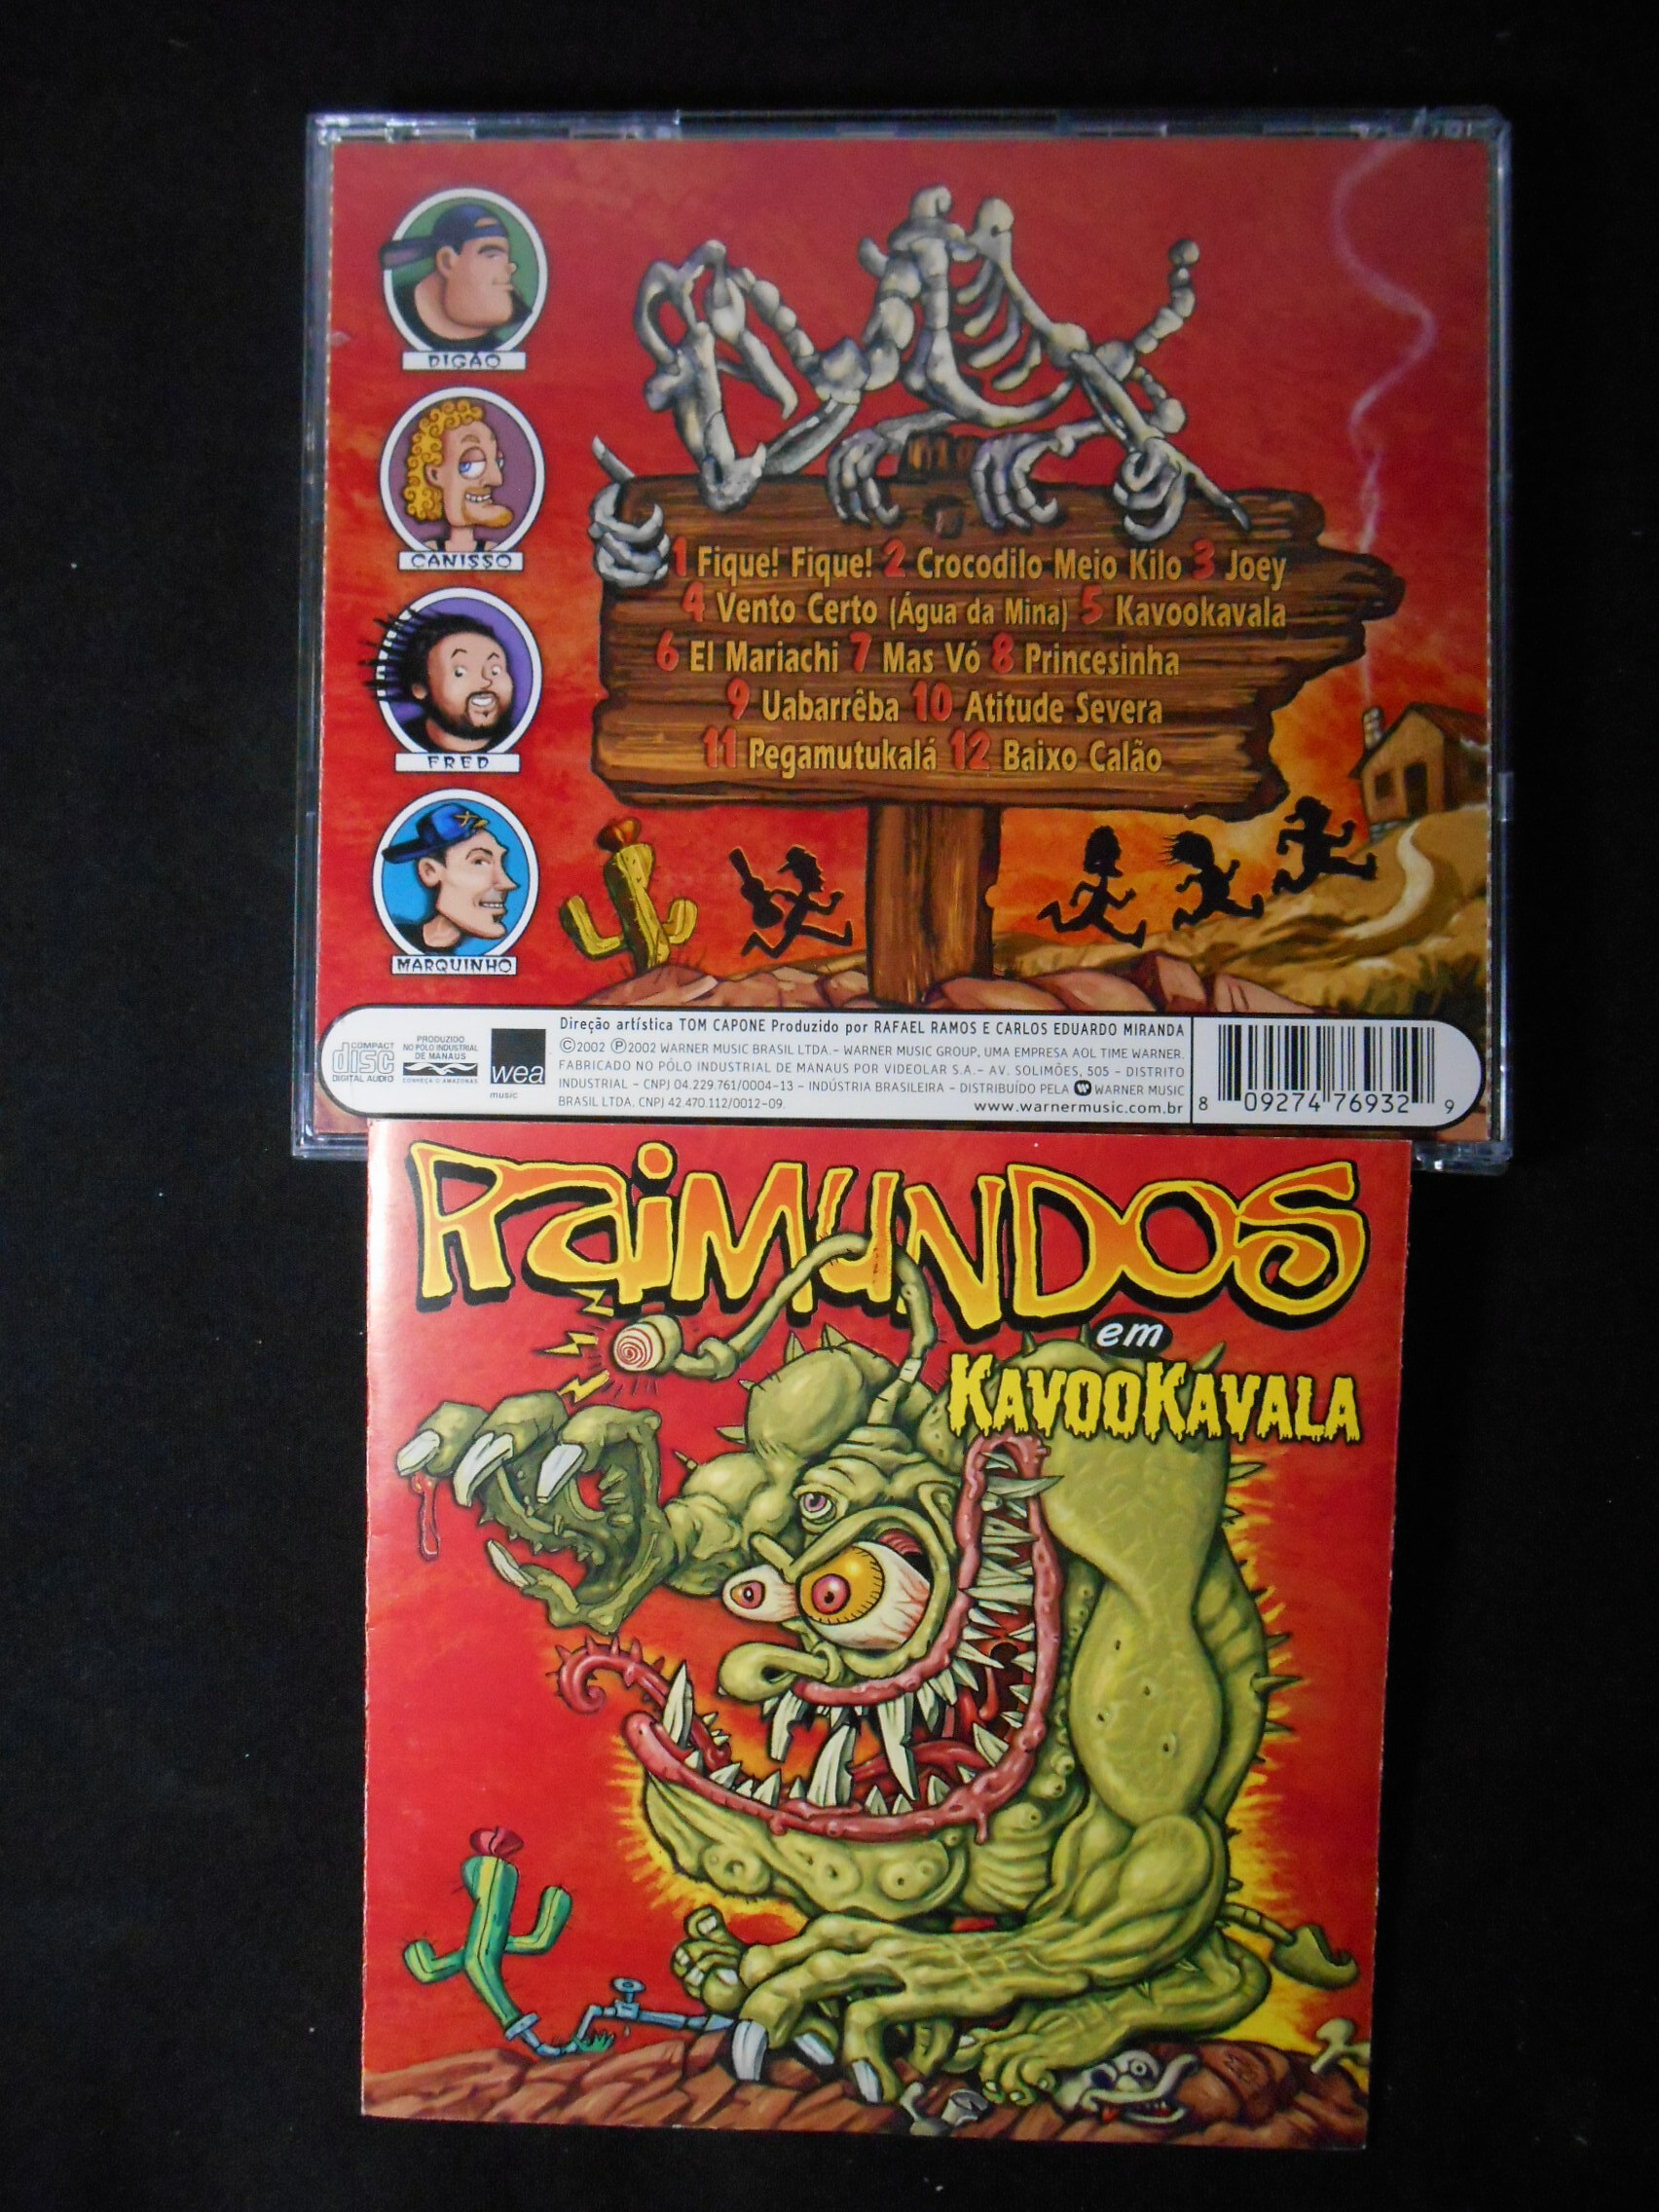 CD - Raimundos - Kavookavala